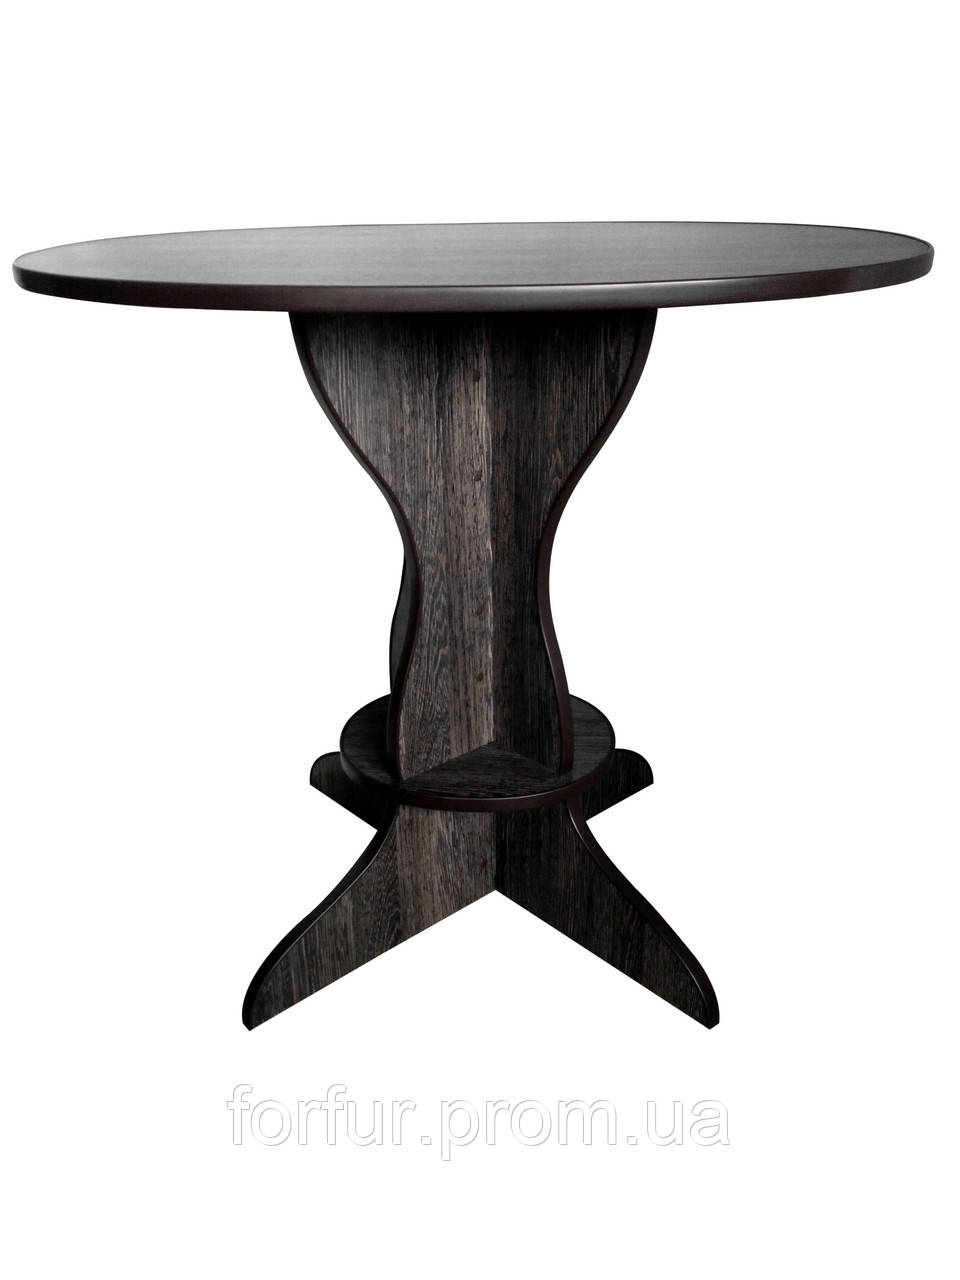 Овальний кухонний стіл розміром стільниці 85 см х 65 см